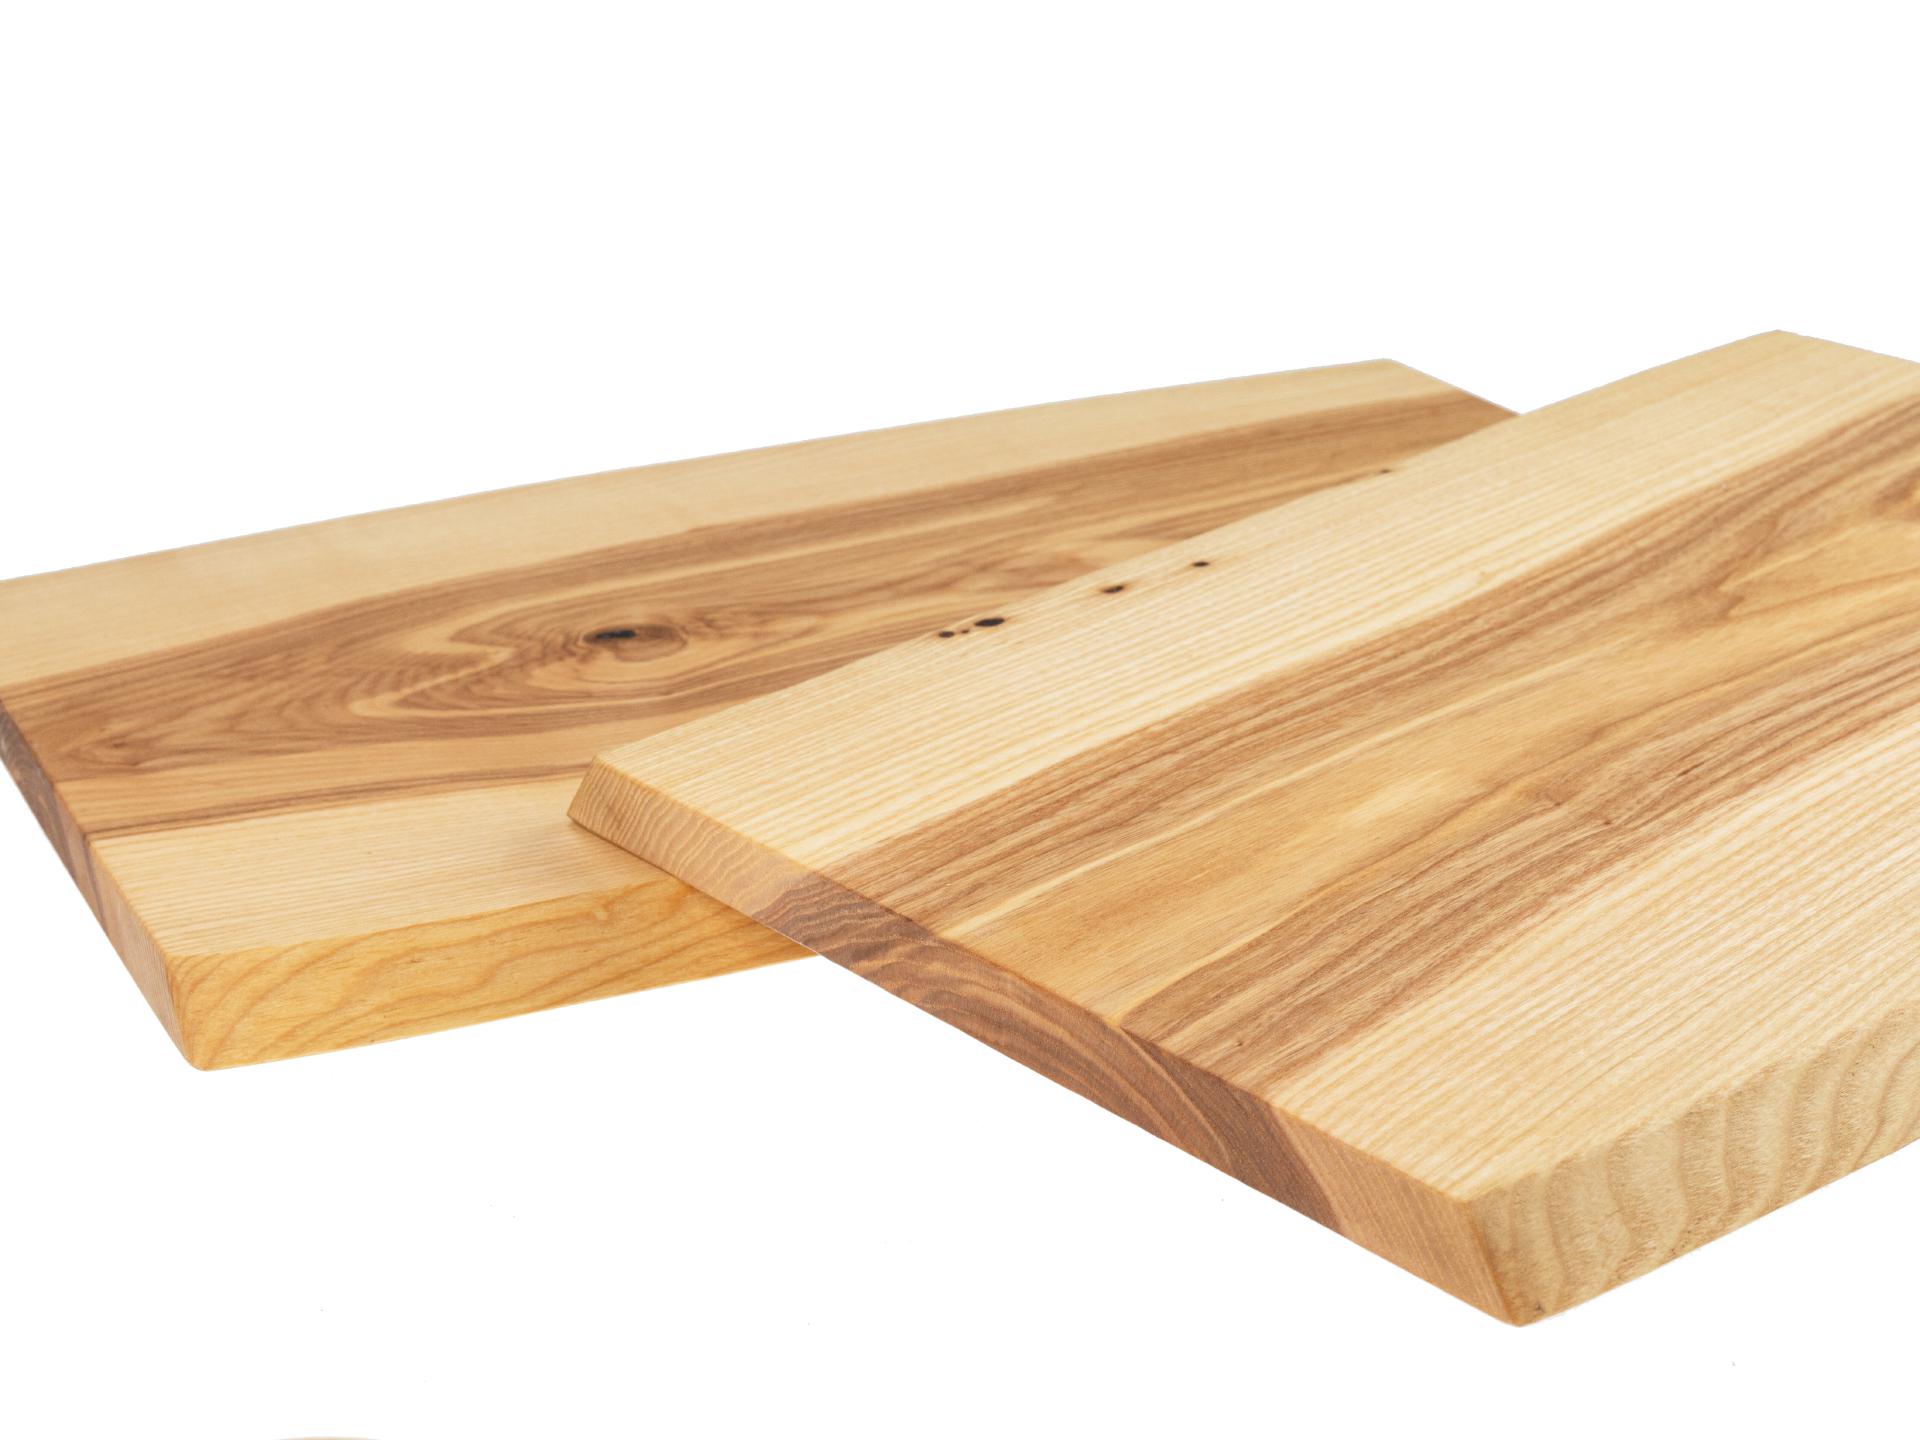 Holz Schneidebrett aus Kern Esche geölt mit Baumkante geschliffen 22mm dick 52 x 30-35 cm